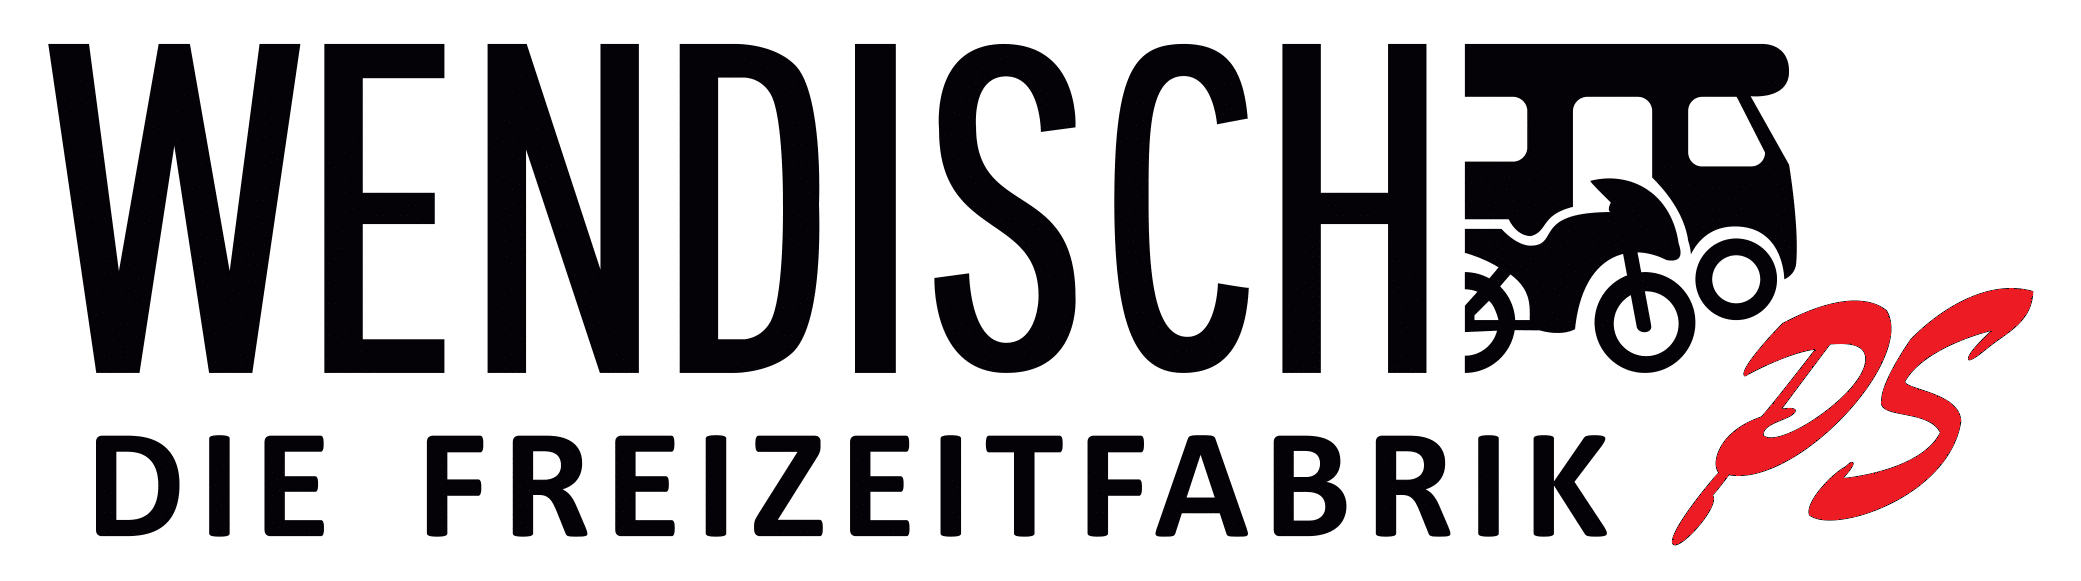 Logo Wendisch 2021 aktuell